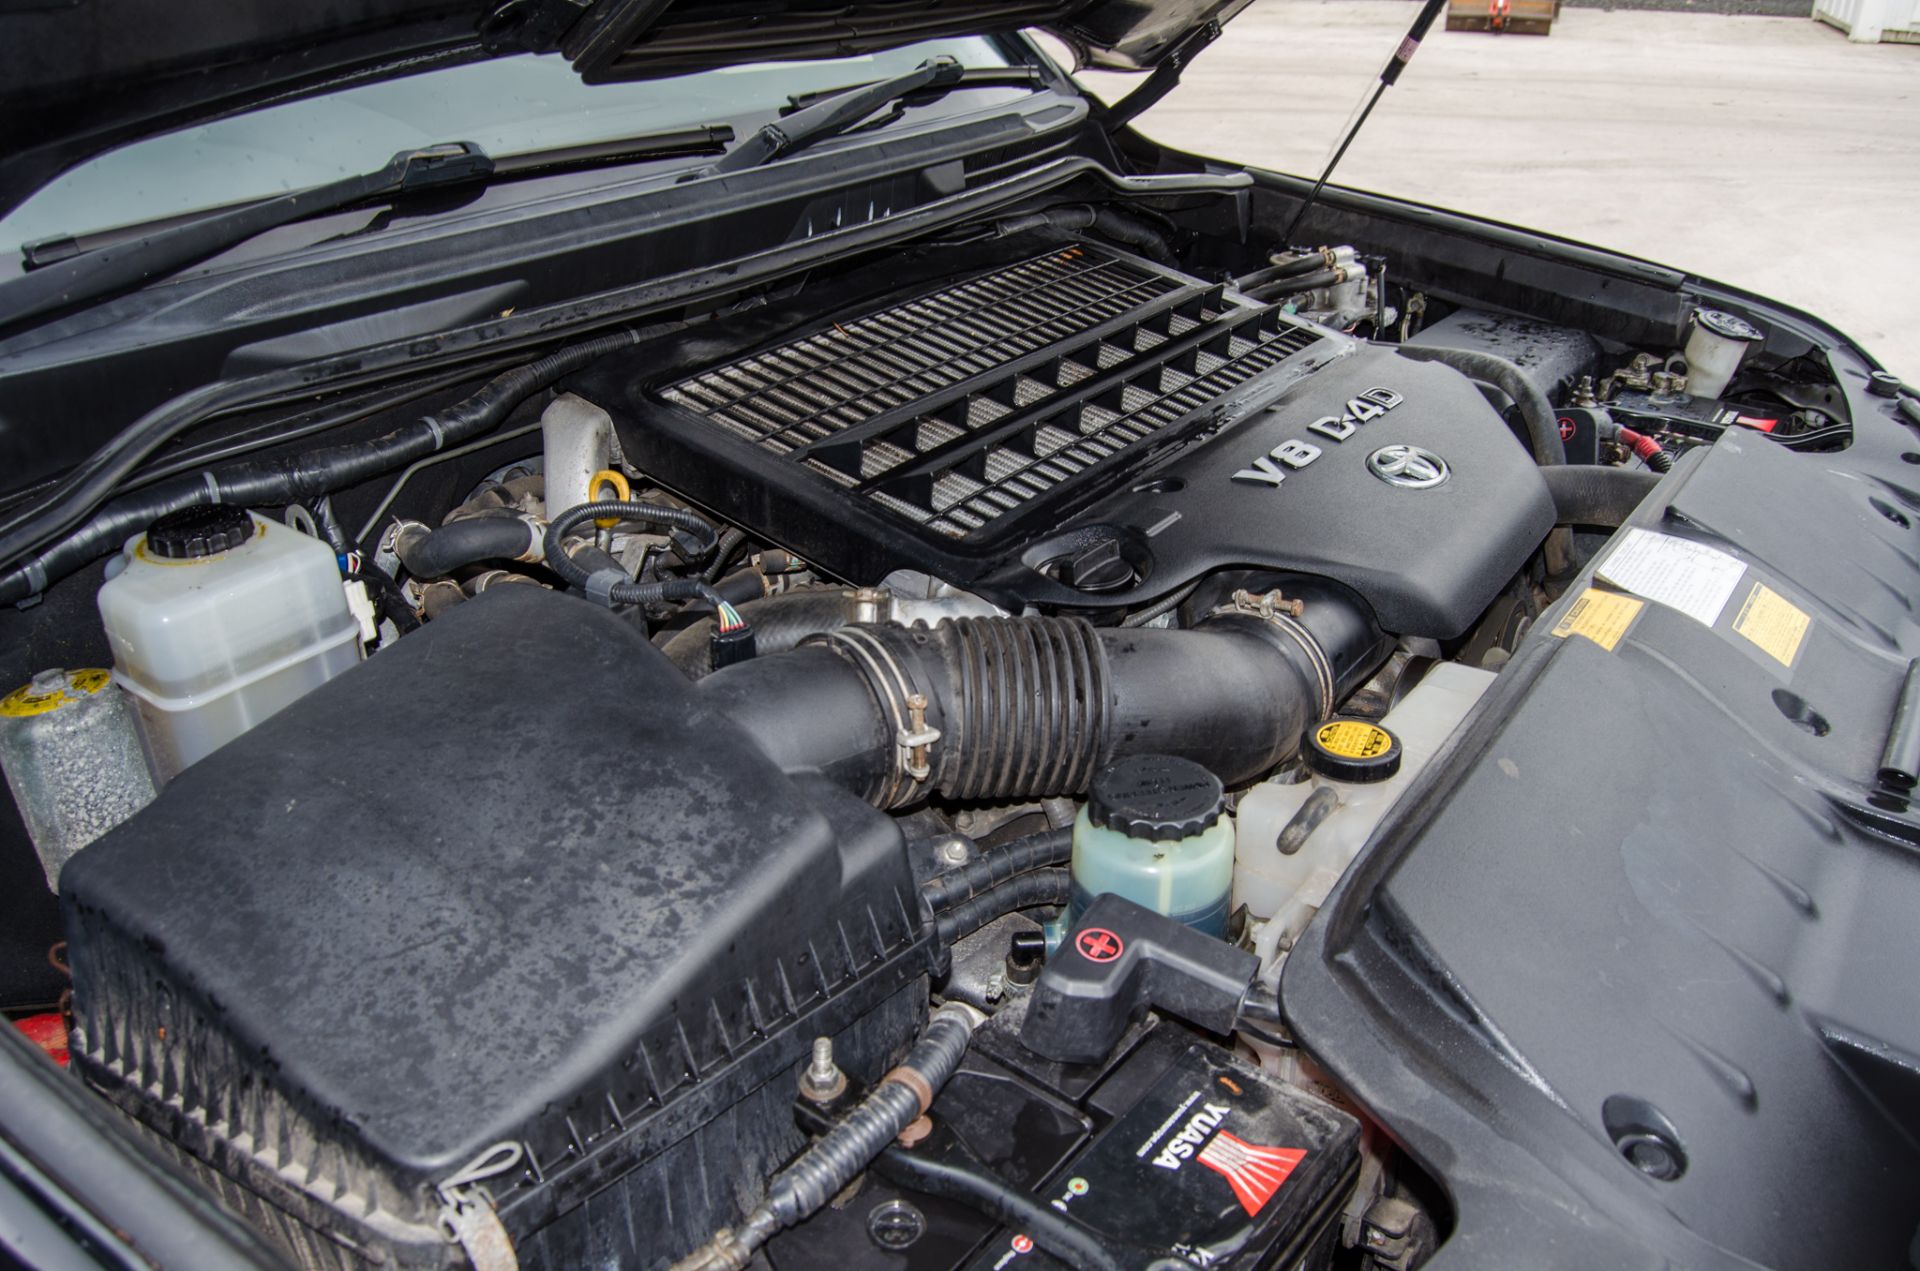 Toyota Landcruiser V8 D-4D 4.5 litre turbo diesel 4WD 5 door estate car Registration Number: VES 23S - Image 41 of 45